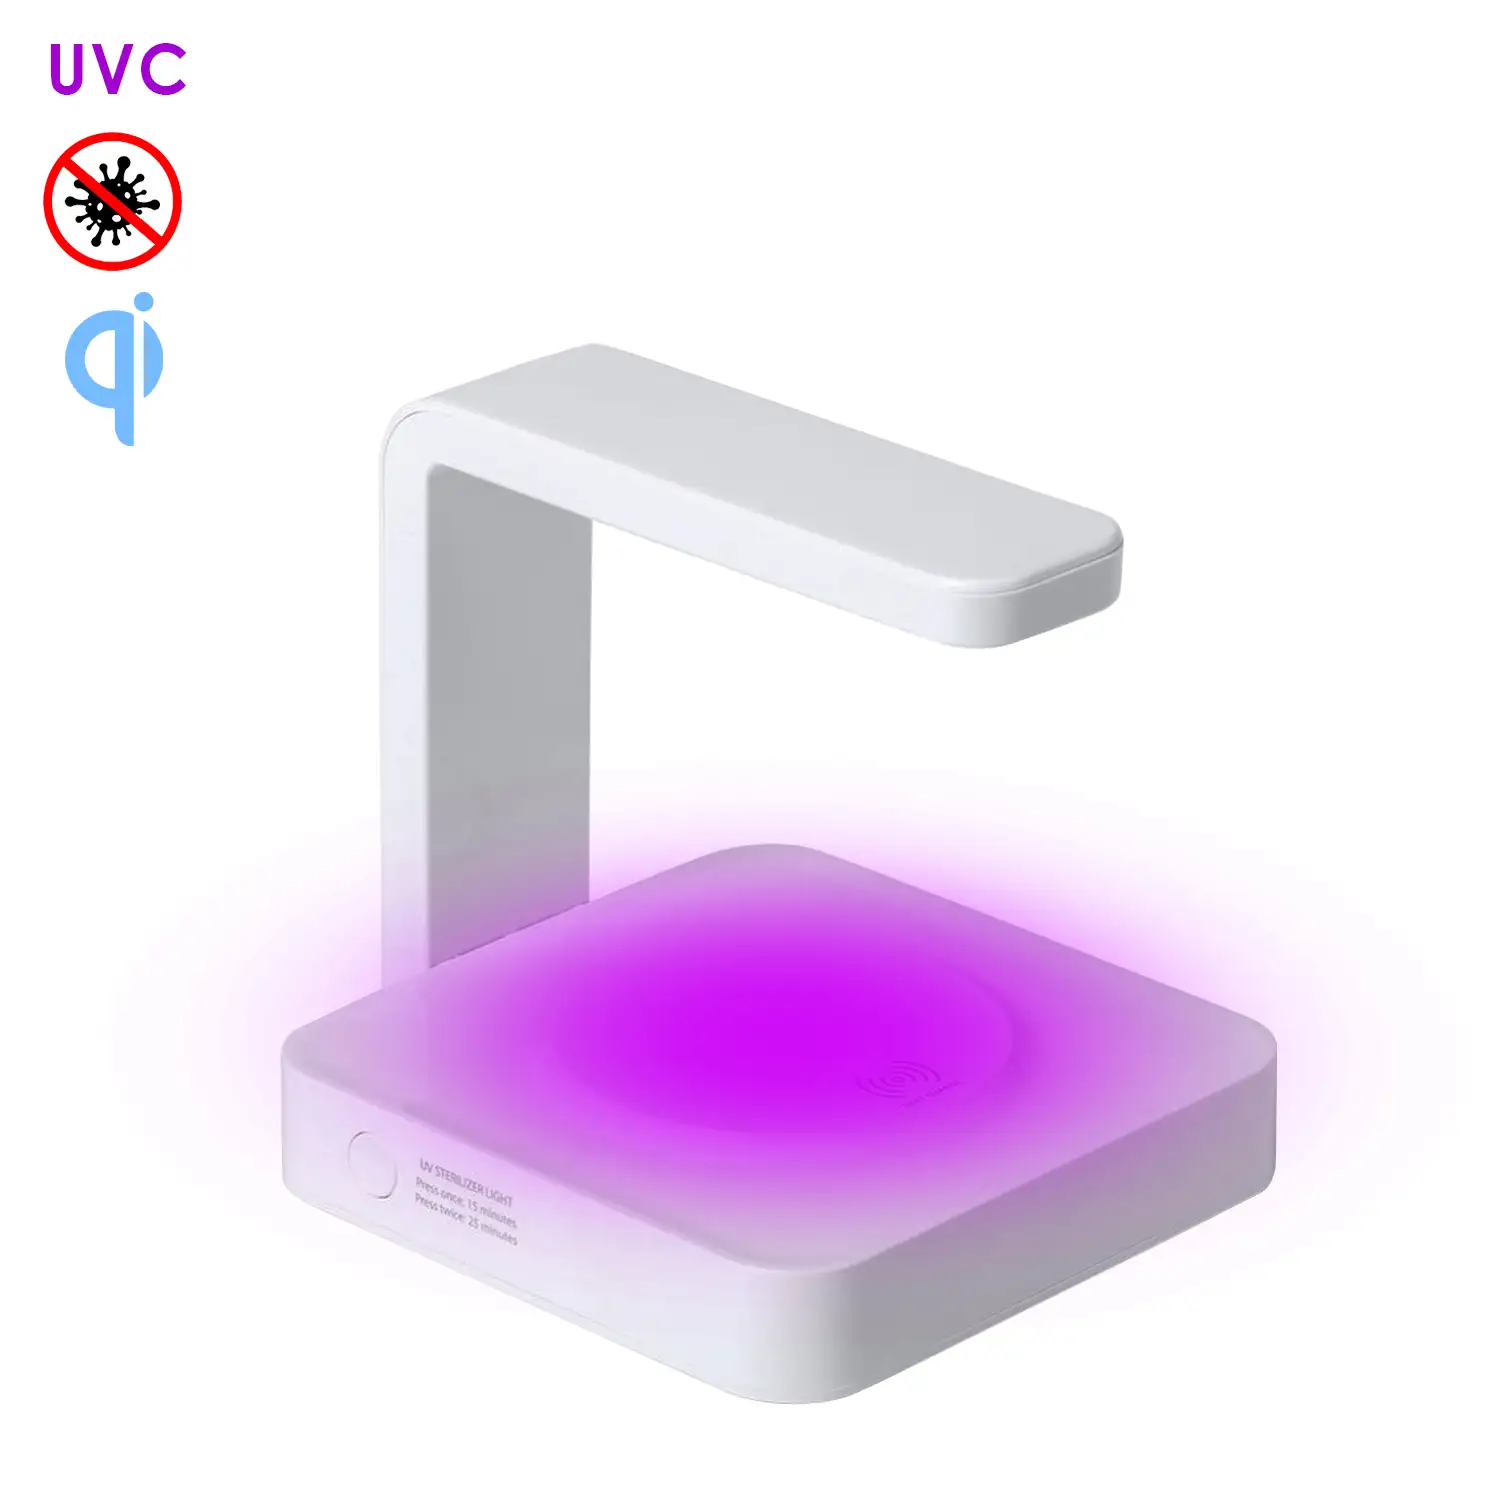 Lámpara esterilizadora Blay de luz ultravioleta tipo C con cargador inalámbrico integrado para smartphone.